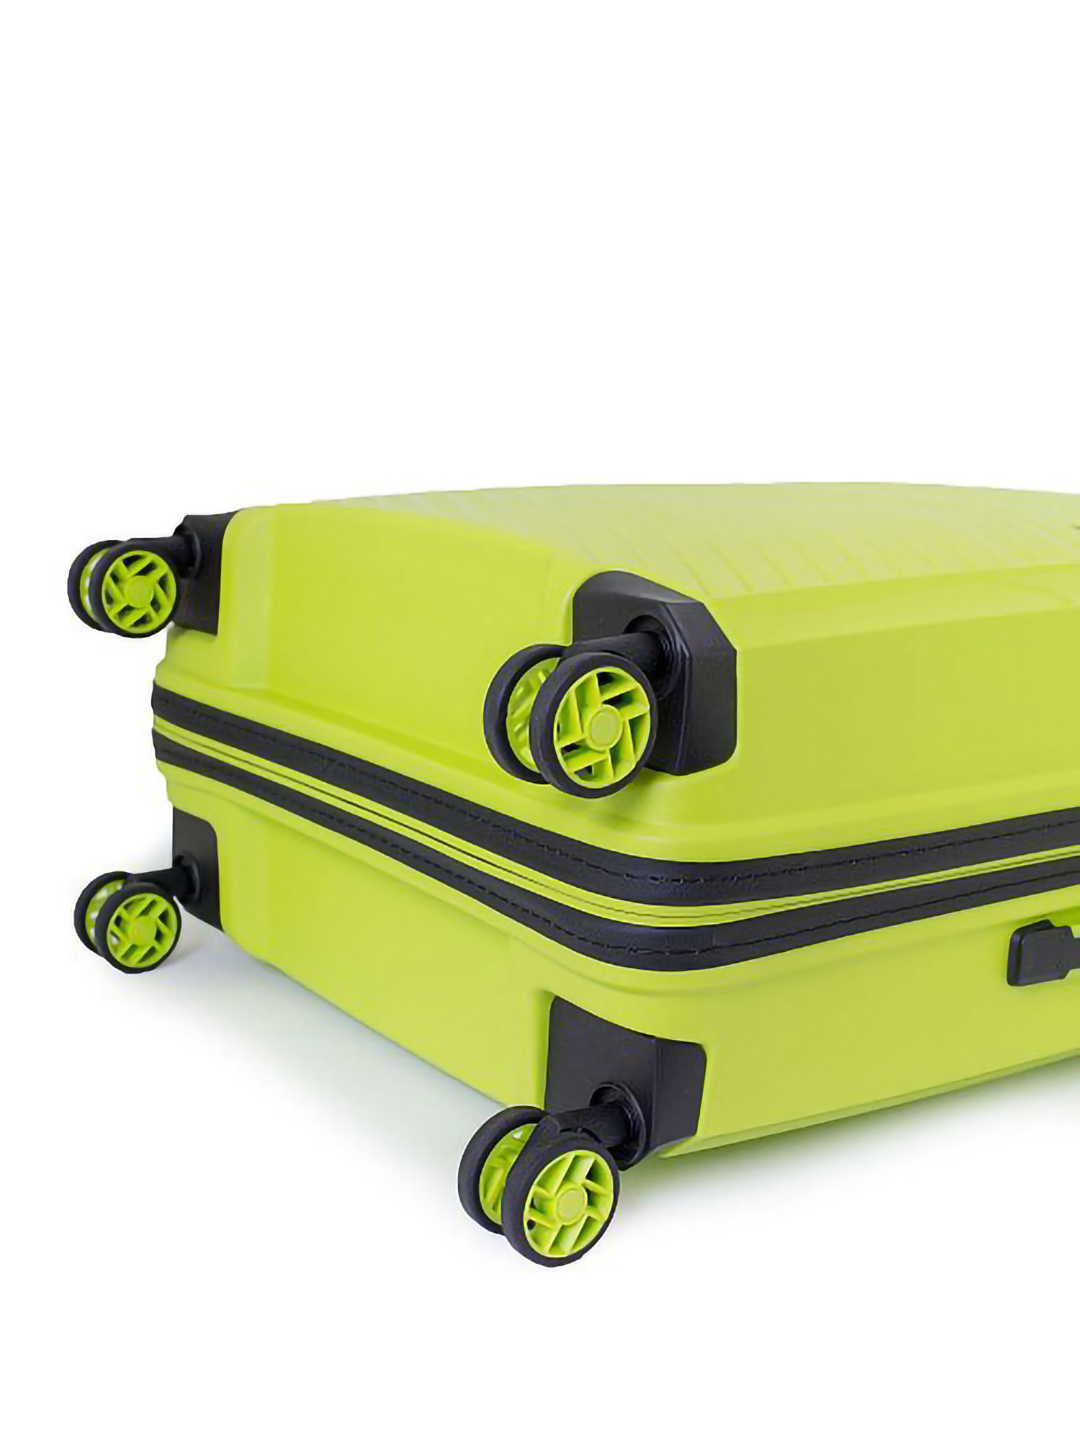 Фото Маленький чемодан на двойных колесах серии Delight Чемоданы